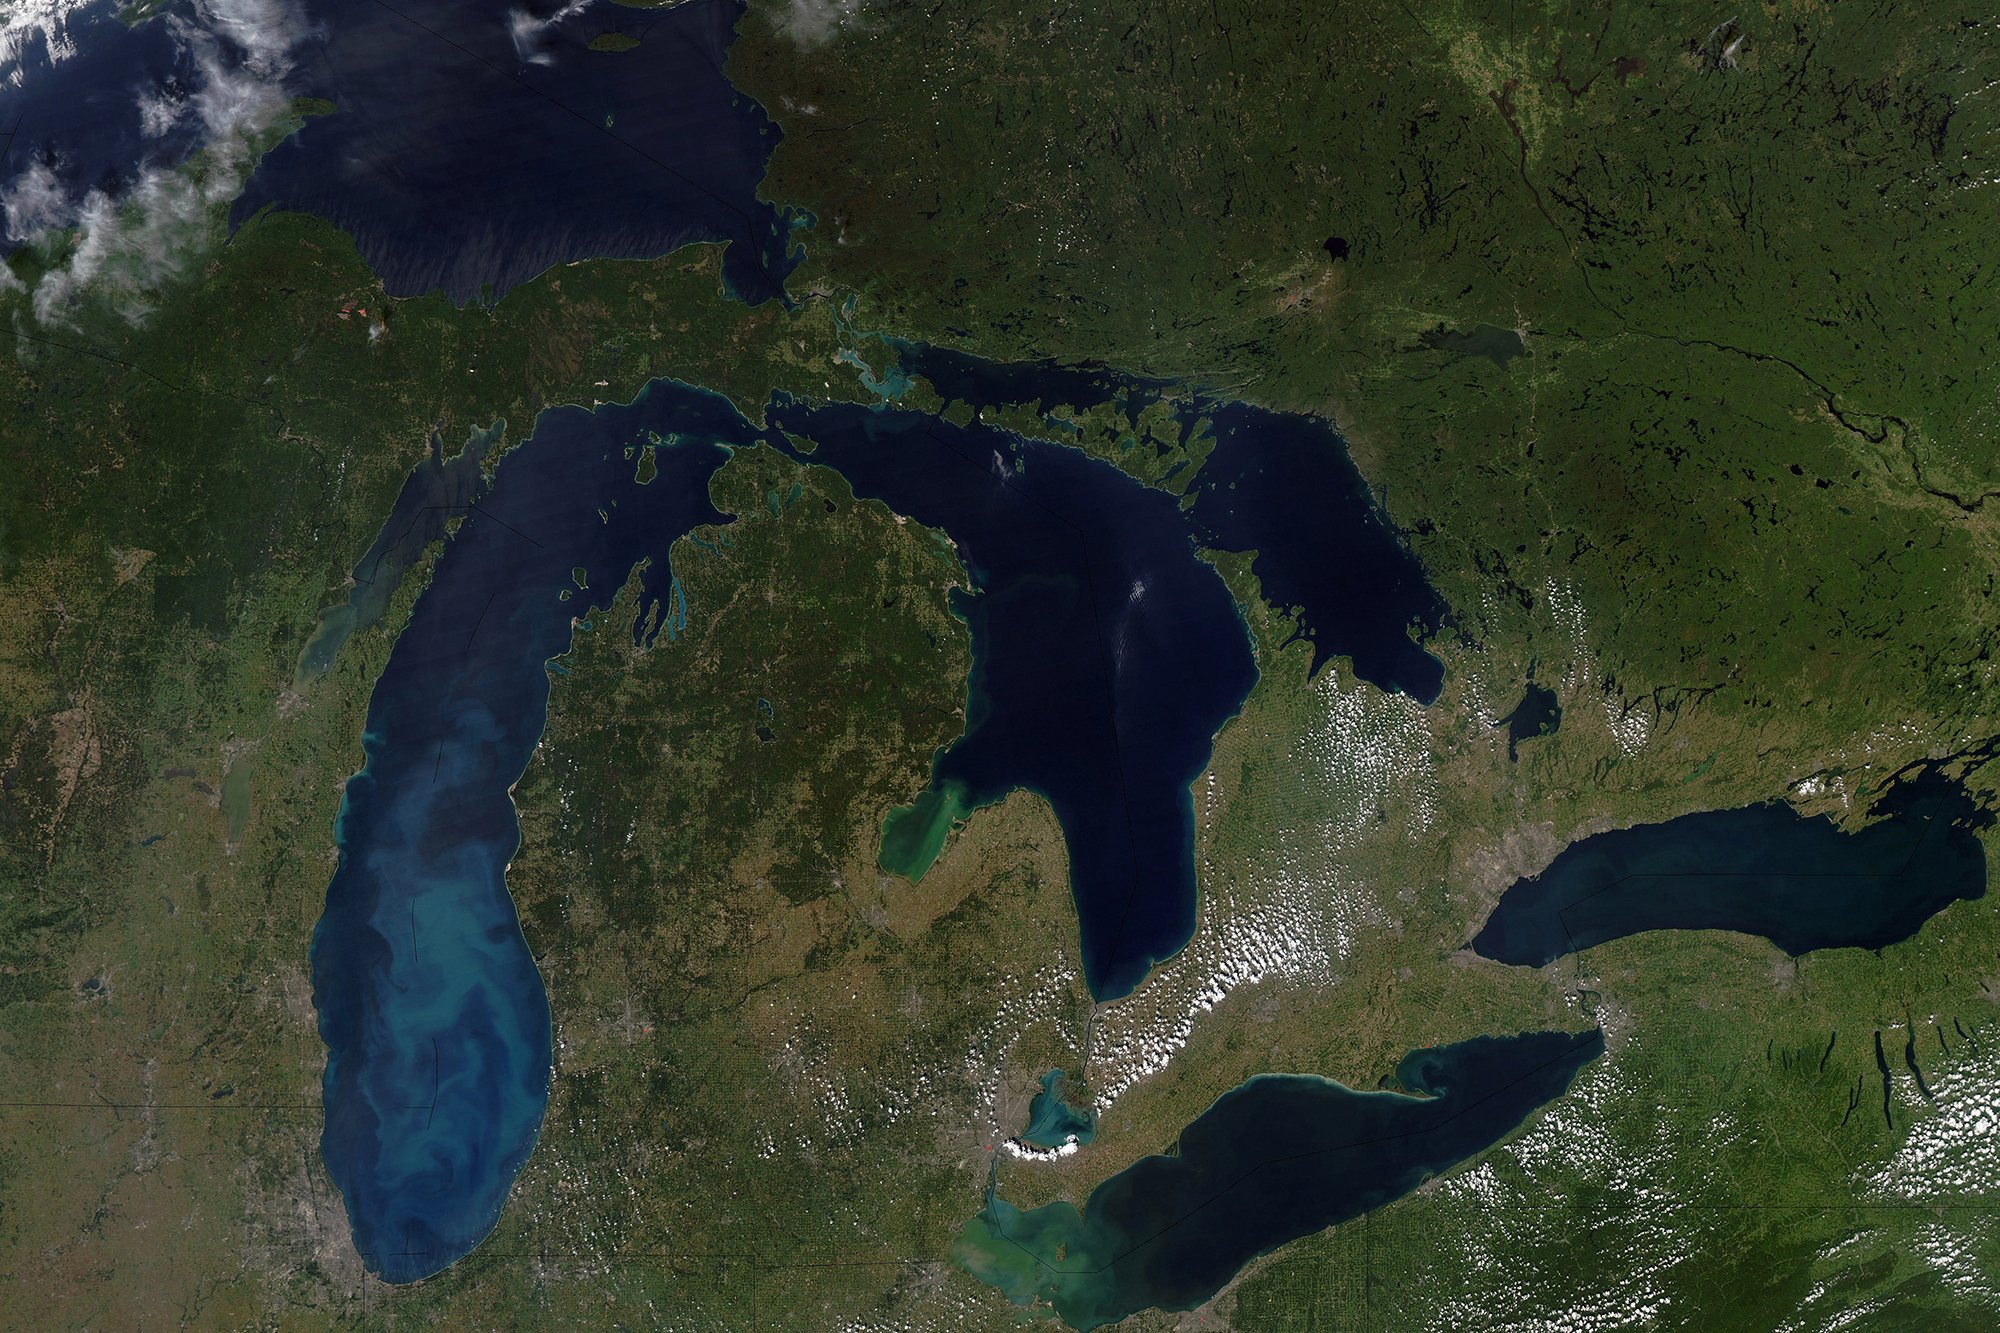 Район великих американских озер. Озеро Гурон Северная Америка. Великие озера (бассейн Атлантического океана). Великие американские озёра верхнее Гурон Мичиган Эри Онтарио. Верхнее Мичиган Гурон Эри Онтарио.